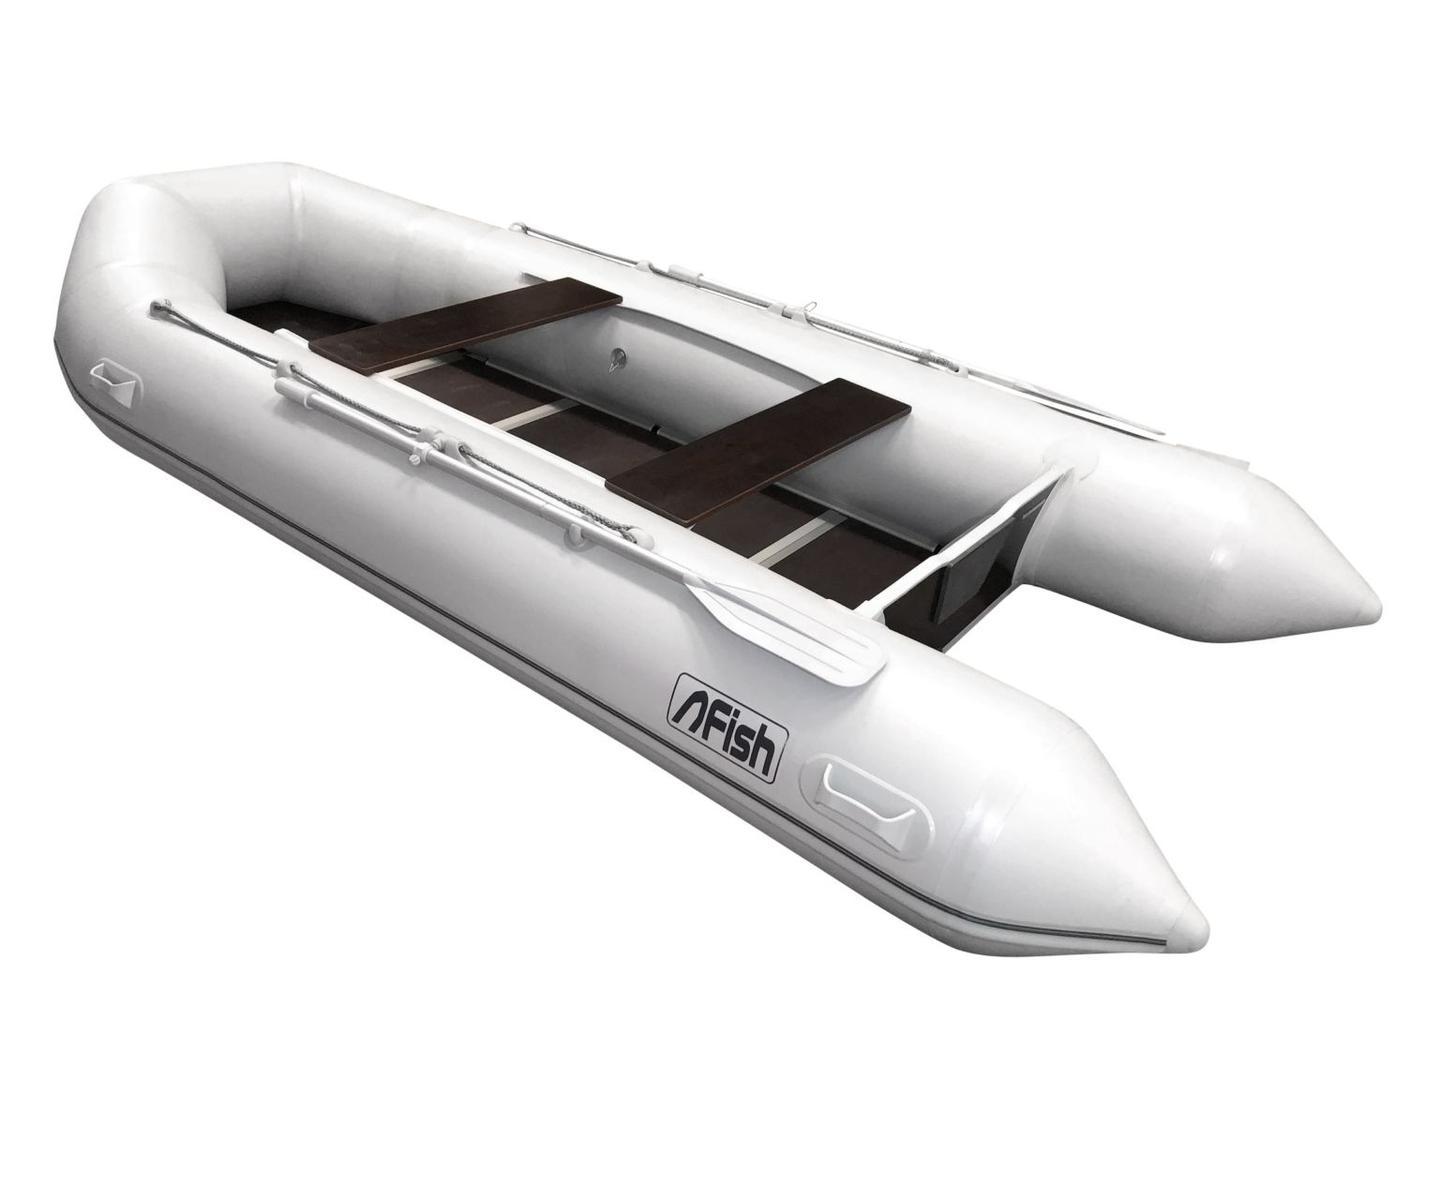 2020 Fish Schlauchboot Angelboot FISH 380 mit Festboden und Luftkiel NEU